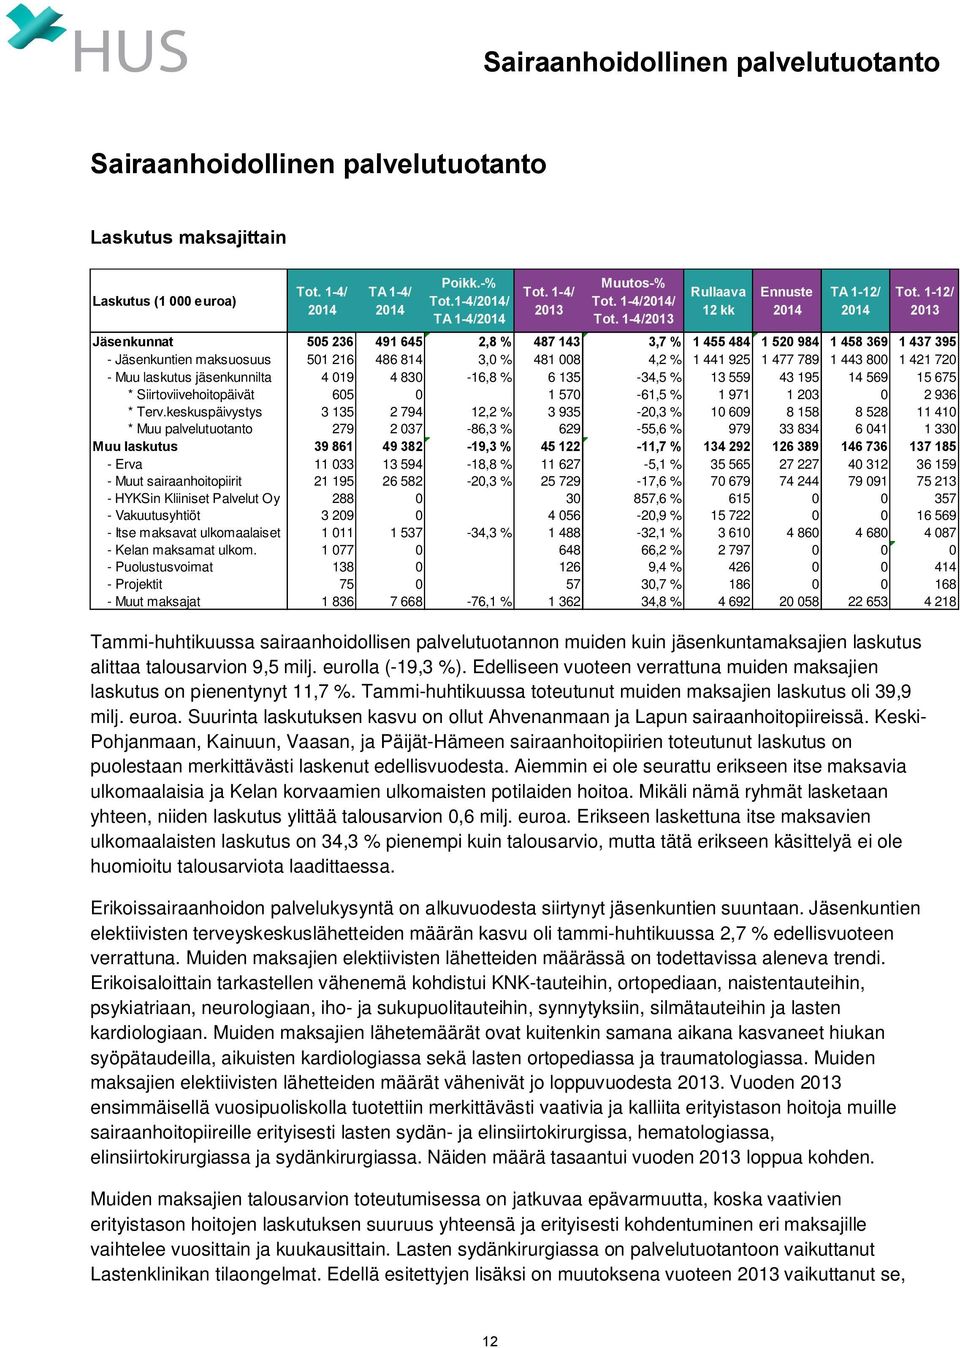 1-4/2013 Rullaava 12 kk Ennuste 2014 TA 1-12/ 2014 Tammi-huhtikuussa sairaanhoidollisen palvelutuotannon muiden kuin jäsenkuntamaksajien laskutus alittaa talousarvion 9,5 milj. eurolla (-19,3 %).